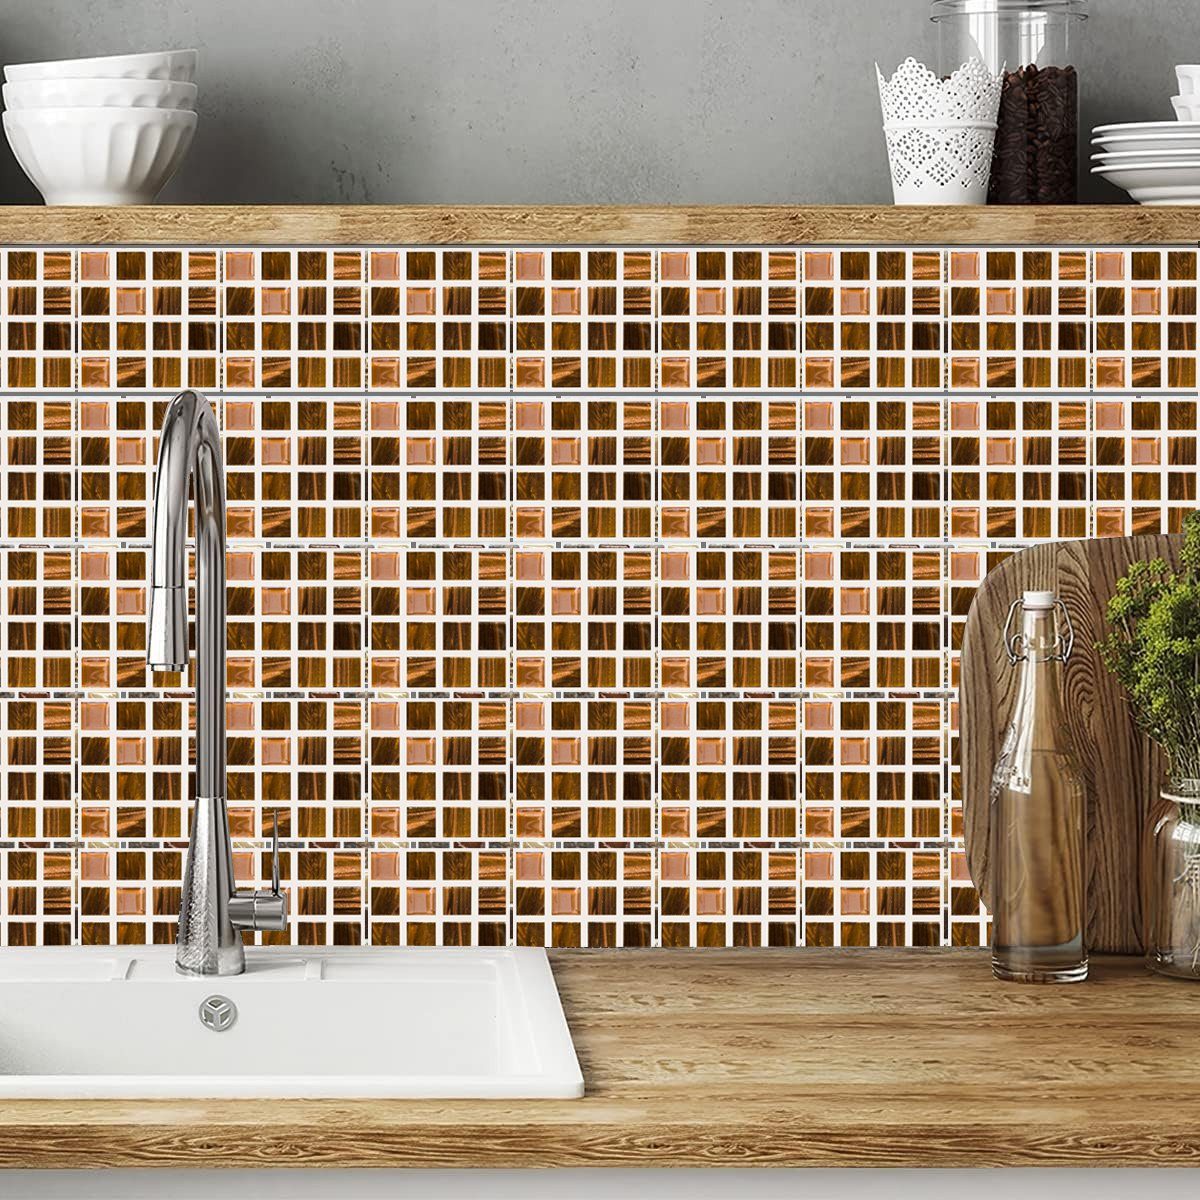 Wandtattoo Küche Jormftte 4 Mosaik-Wandfliesen Mehrfarbig Aufkleber,Selbstklebende,Für Badezimmer